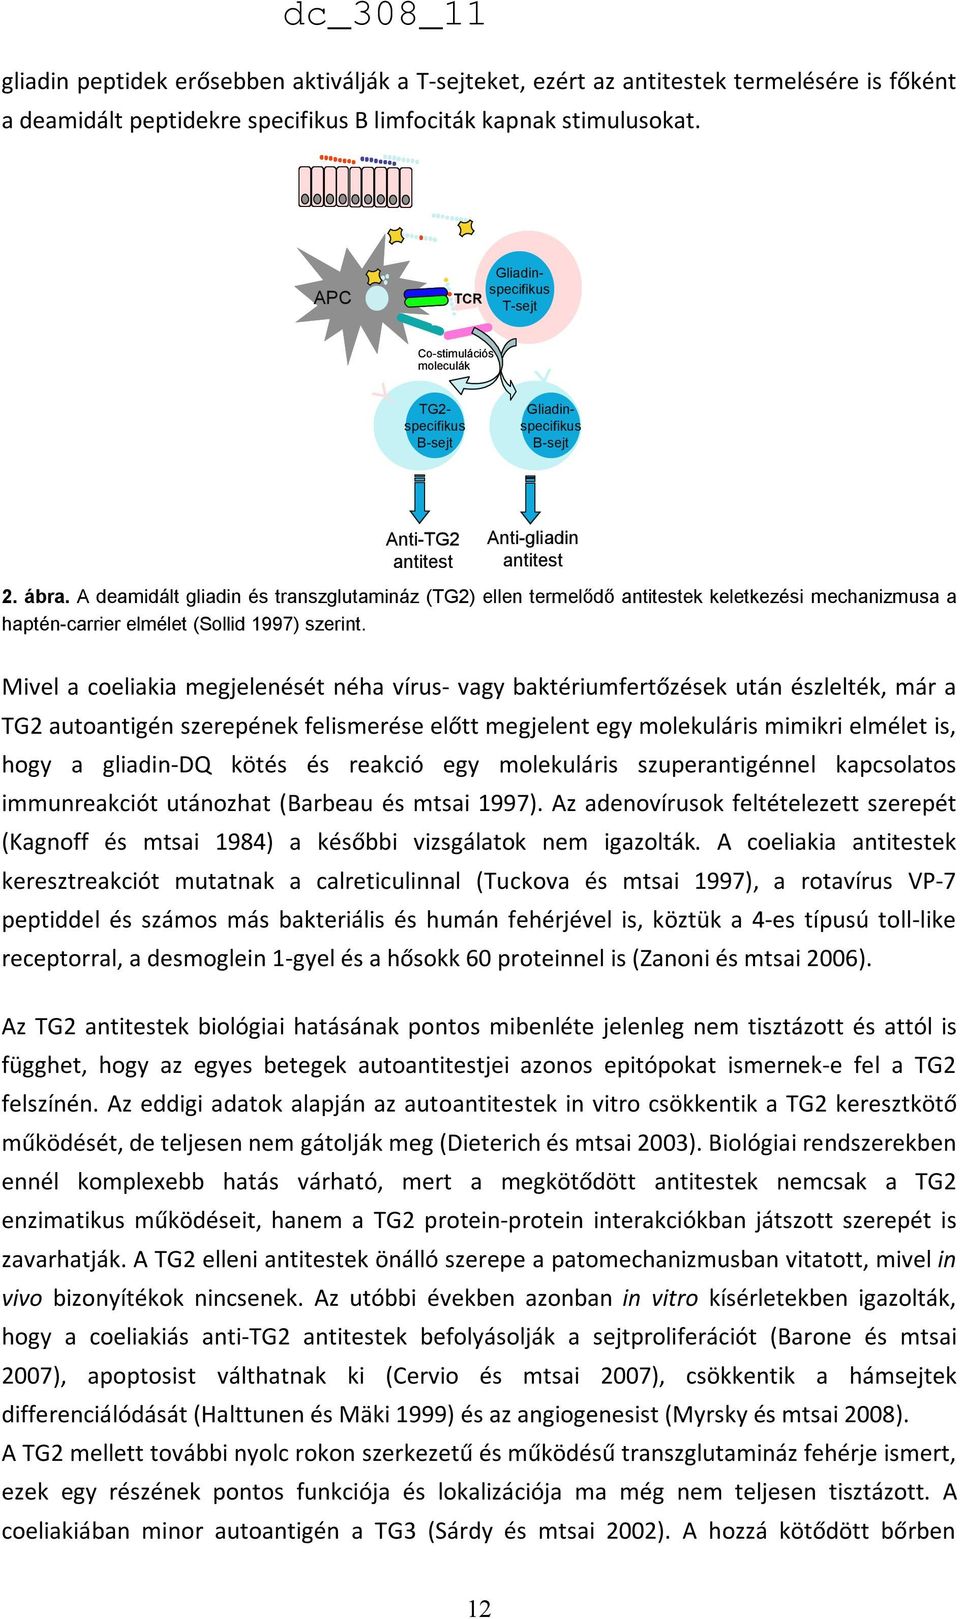 A deamidált gliadin és transzglutamináz (TG2) ellen termelődő antitestek keletkezési mechanizmusa a haptén-carrier elmélet (Sollid 1997) szerint.